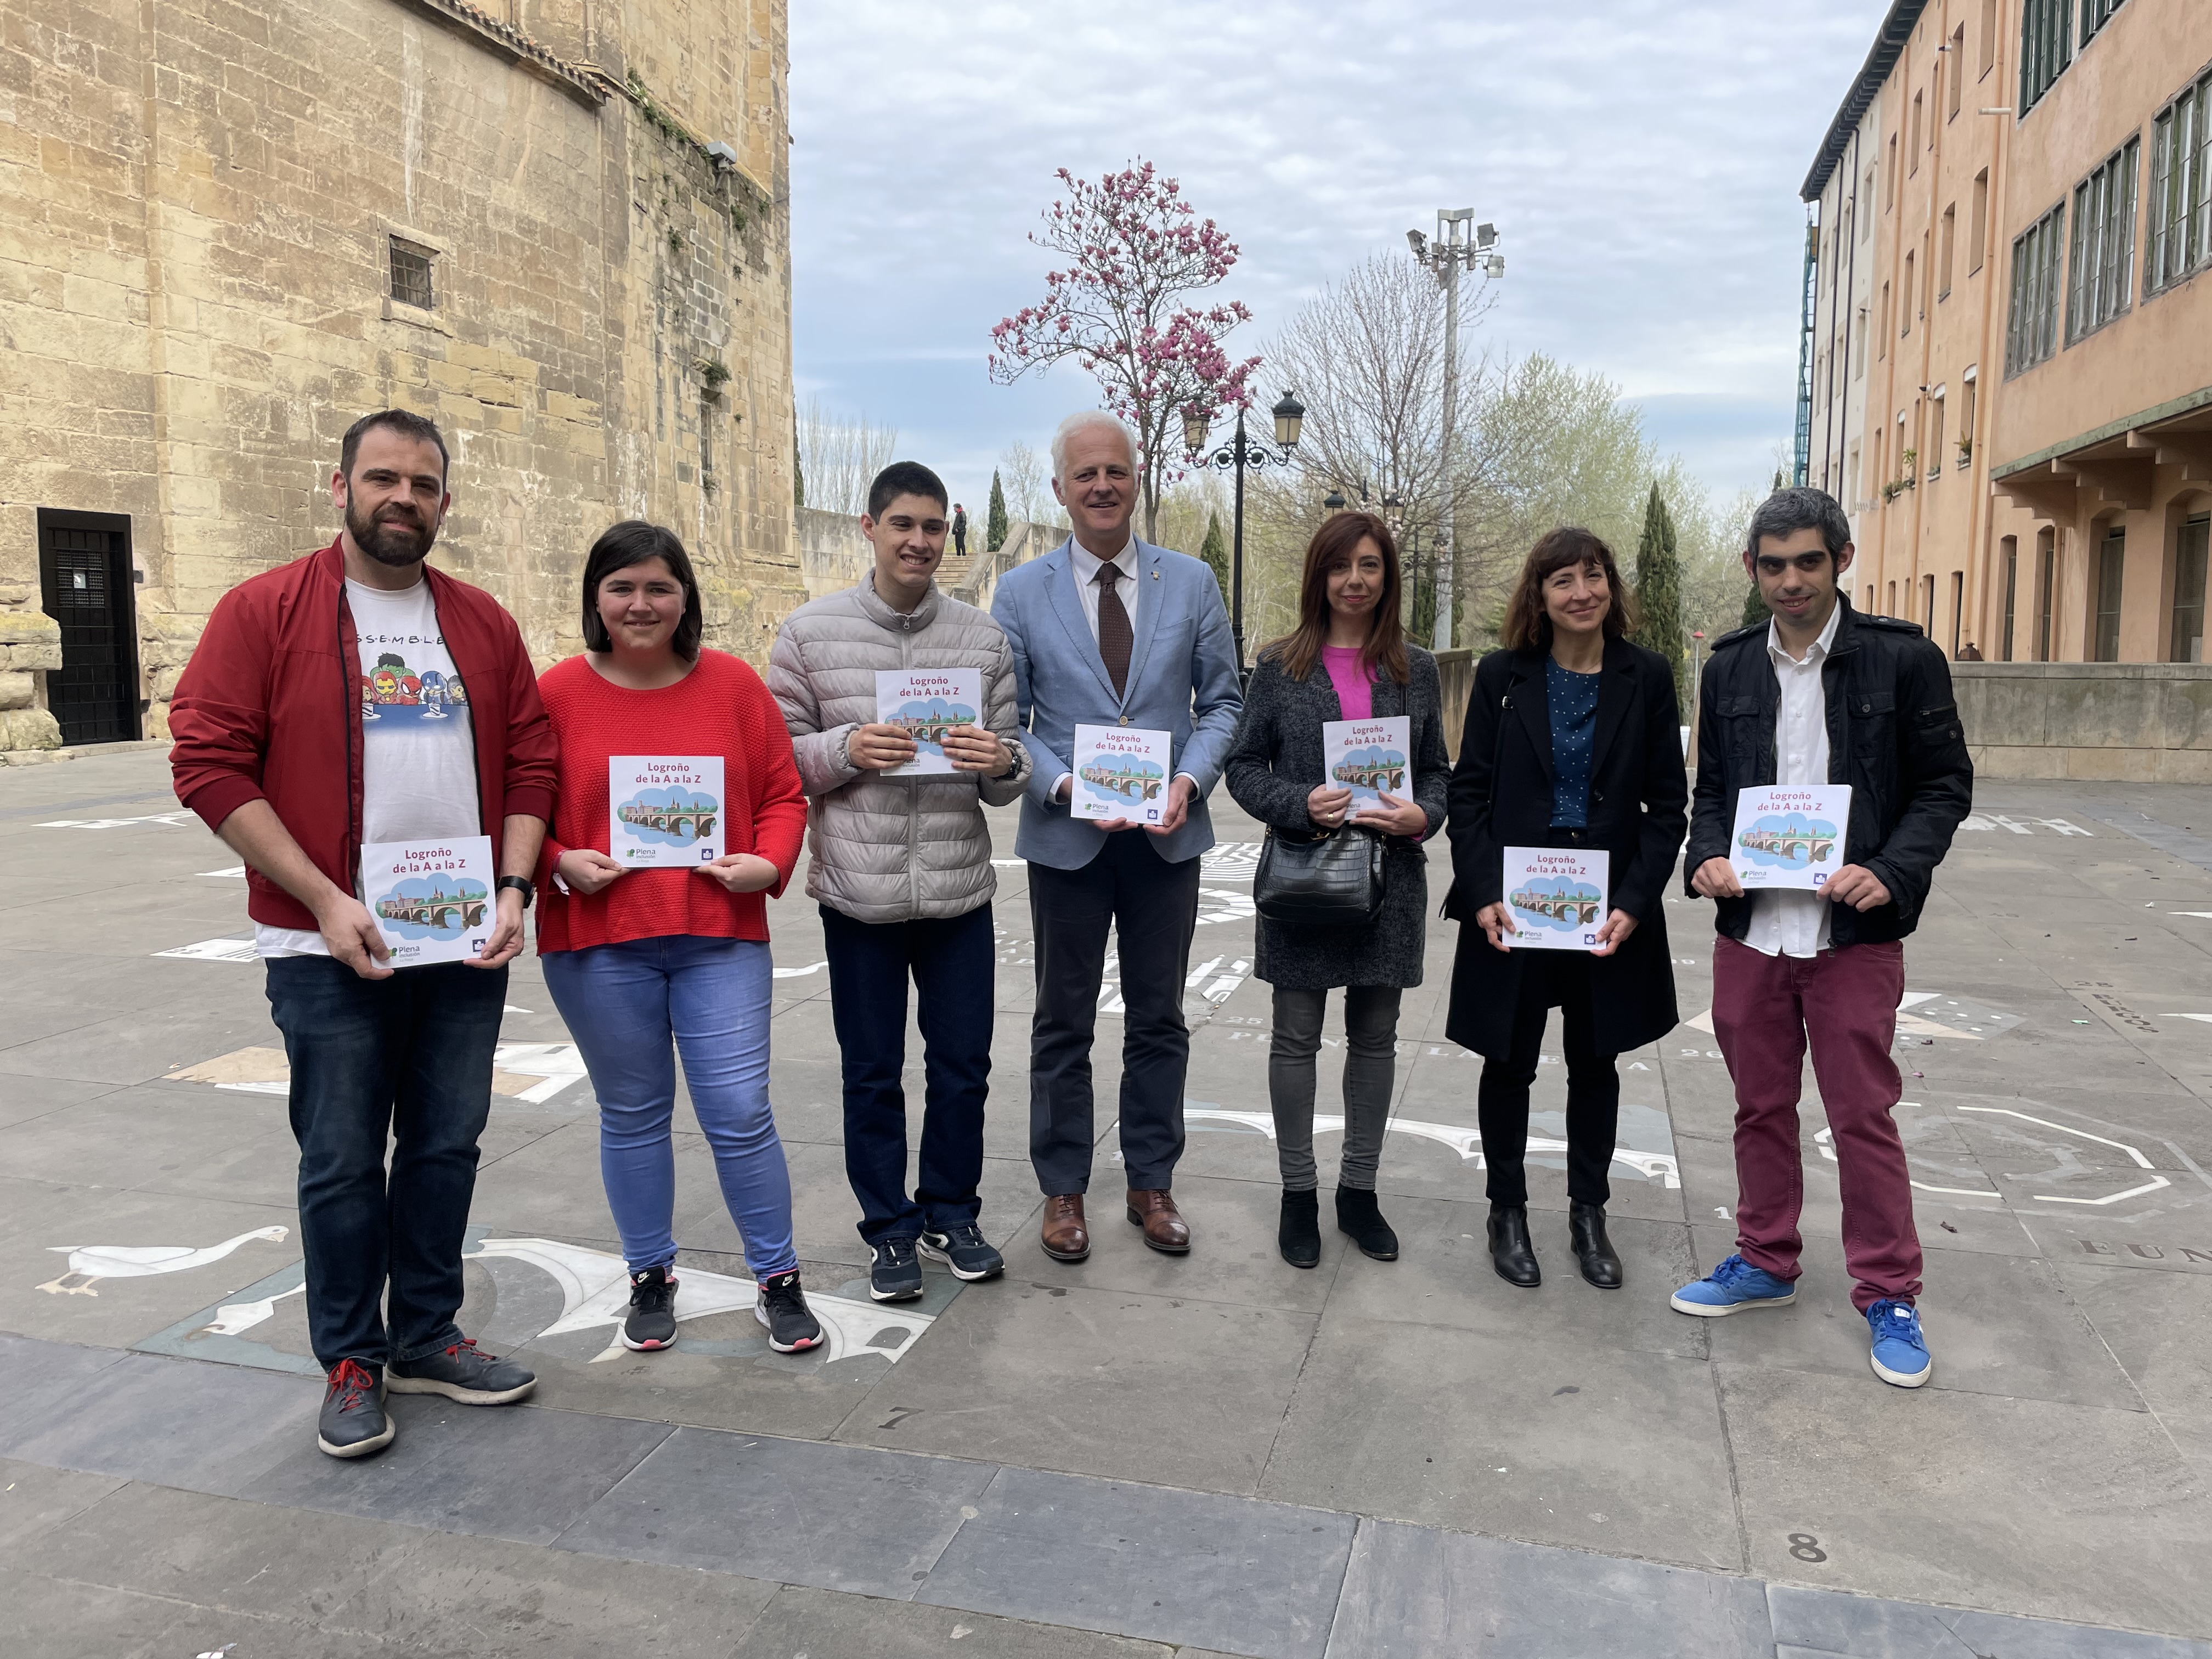 Plena inclusión La Rioja y el Ayuntamiento de Logroño presentan “Logroño de la A a la Z”, un juego online en Lectura Fácil sobre la cultura y costumbres de la ciudad